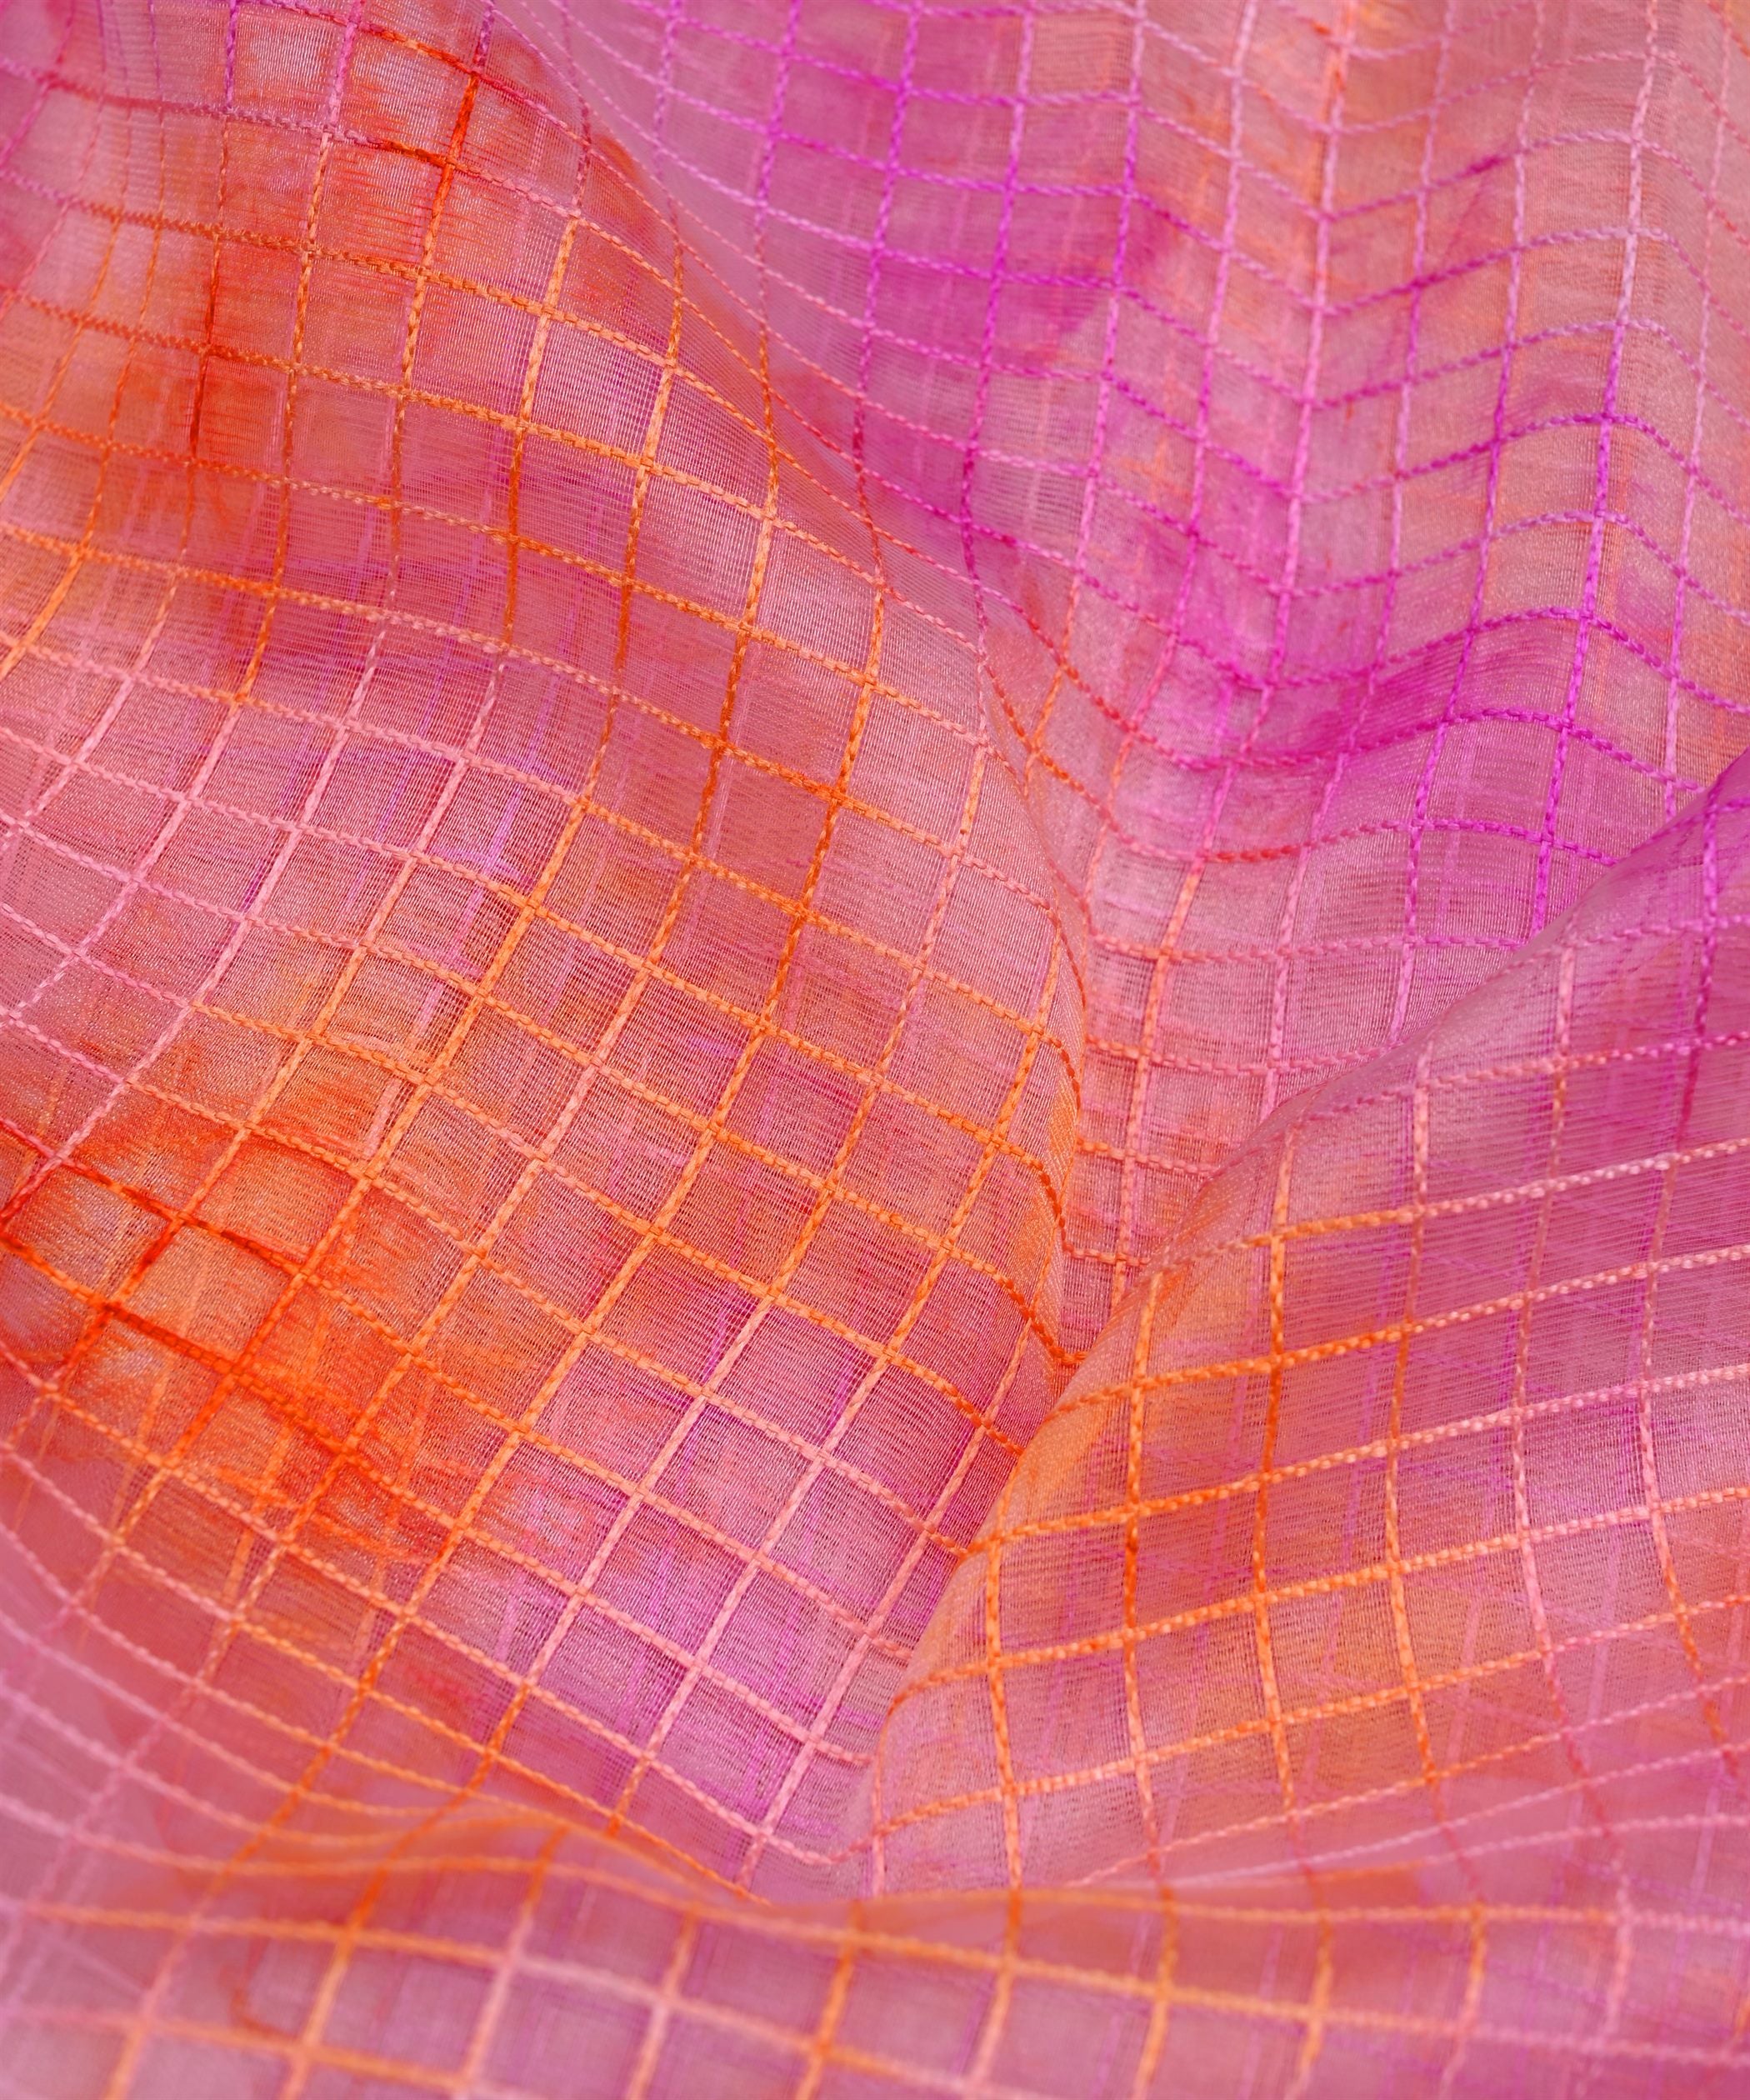 Lavender Shibori Print Organza Fabric with Checks